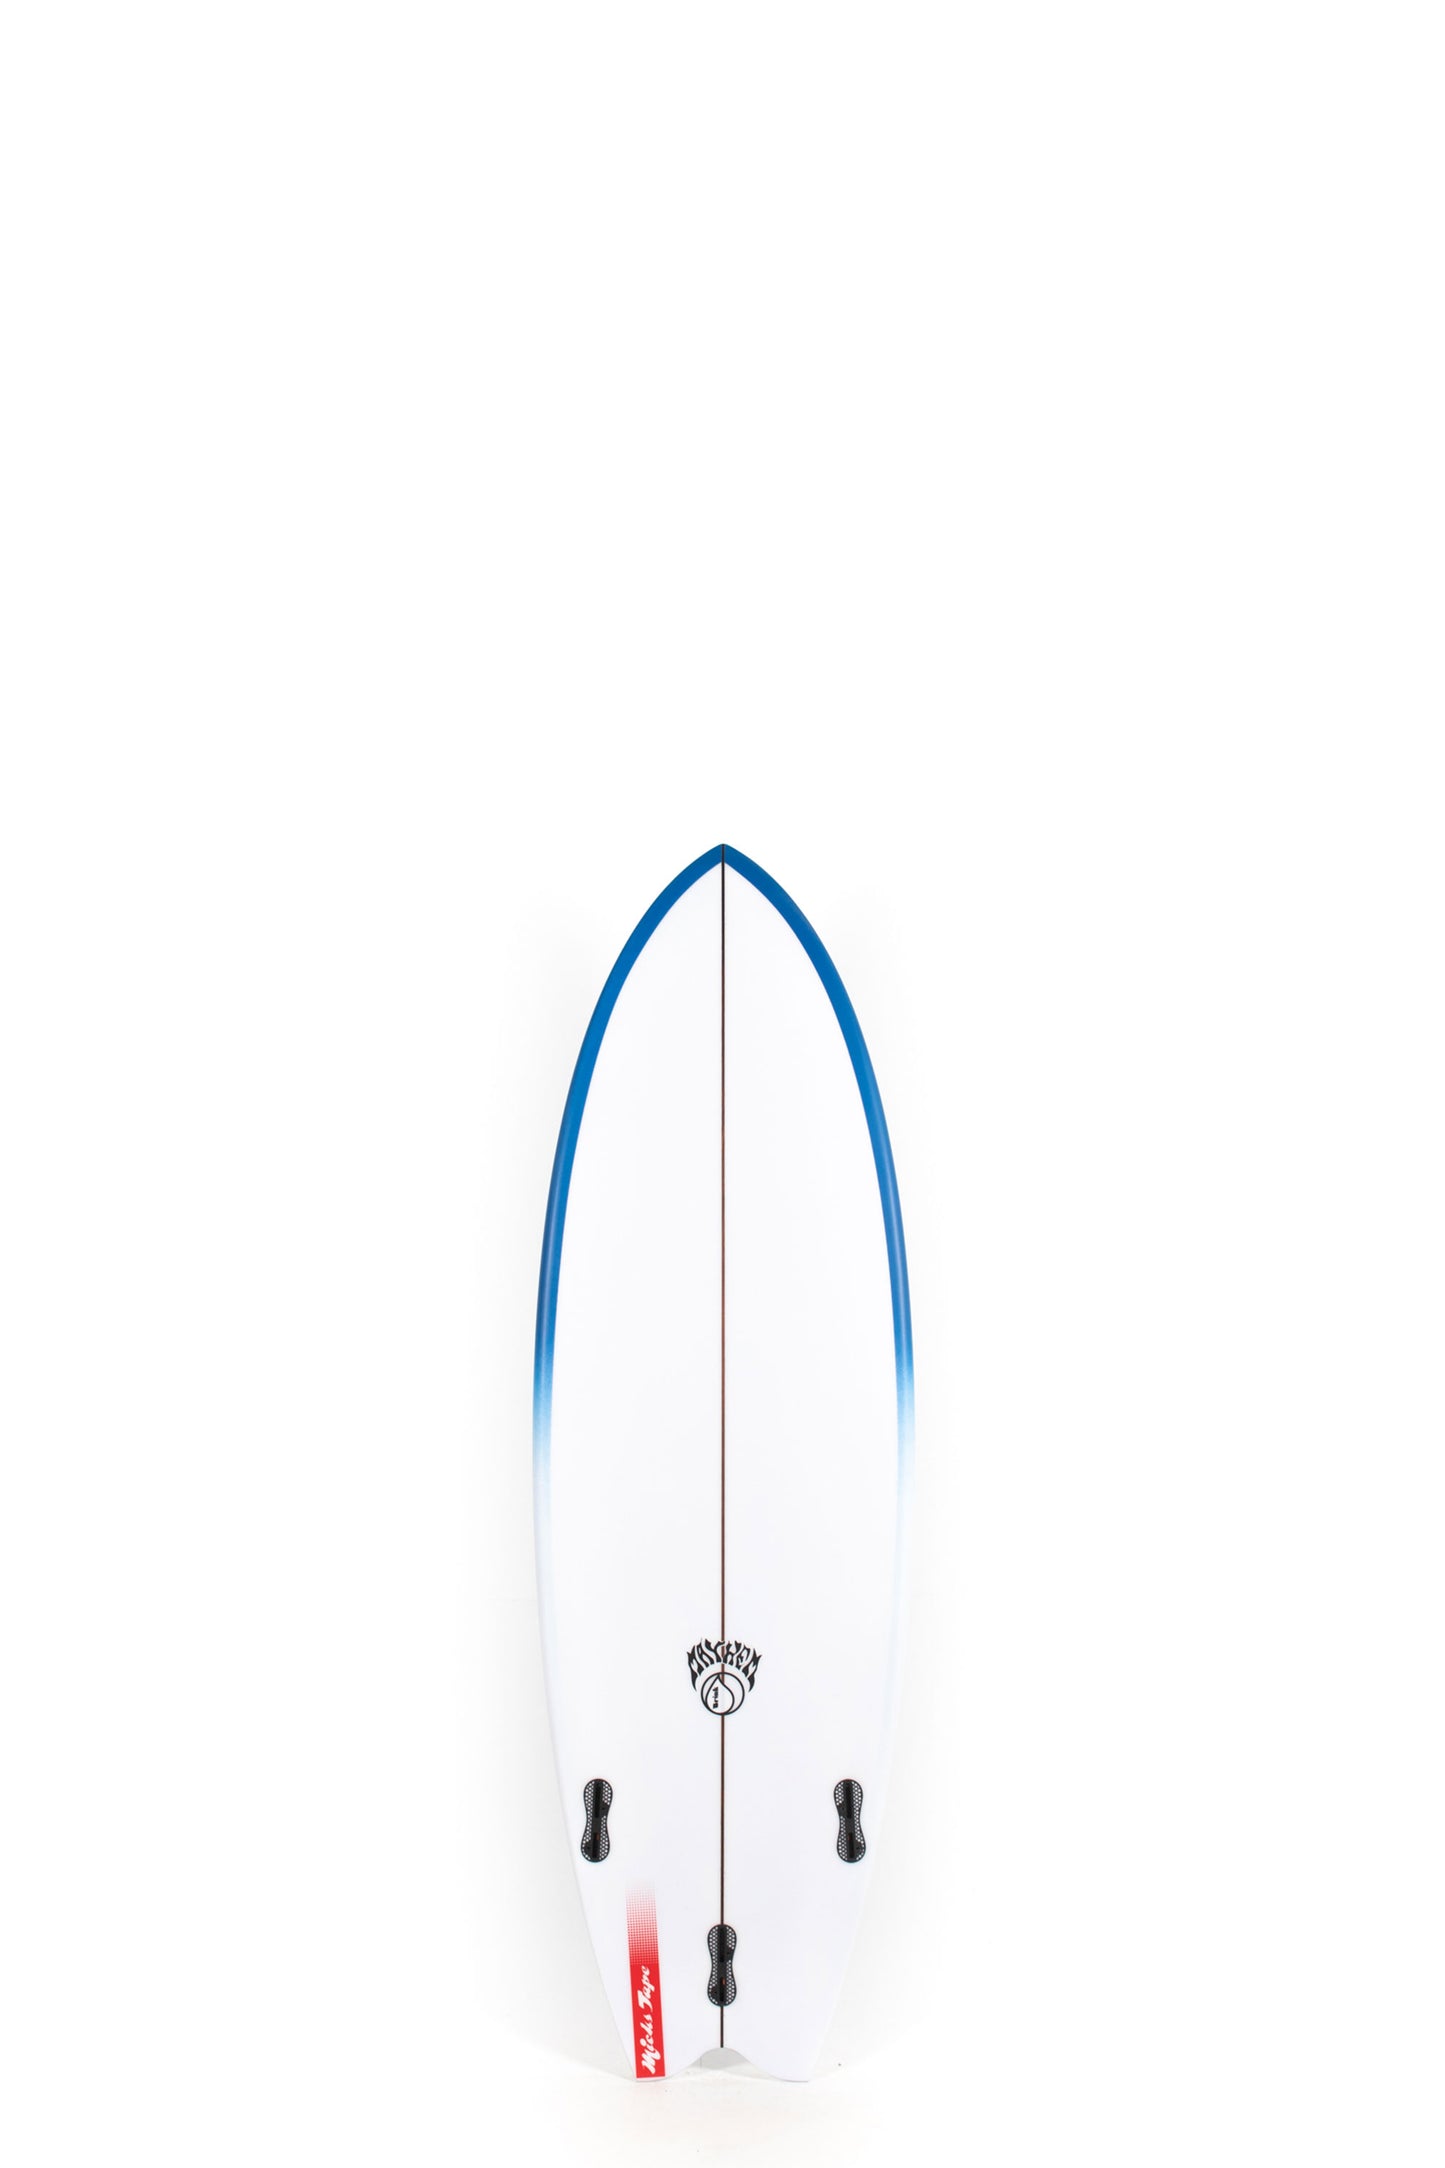 Pukas Surf Shop Lost Surfboard - MICK'S TAPE by Mayhem x Brink - 5’5” x 19,75 x 2,45 - 30,5L - MB00017